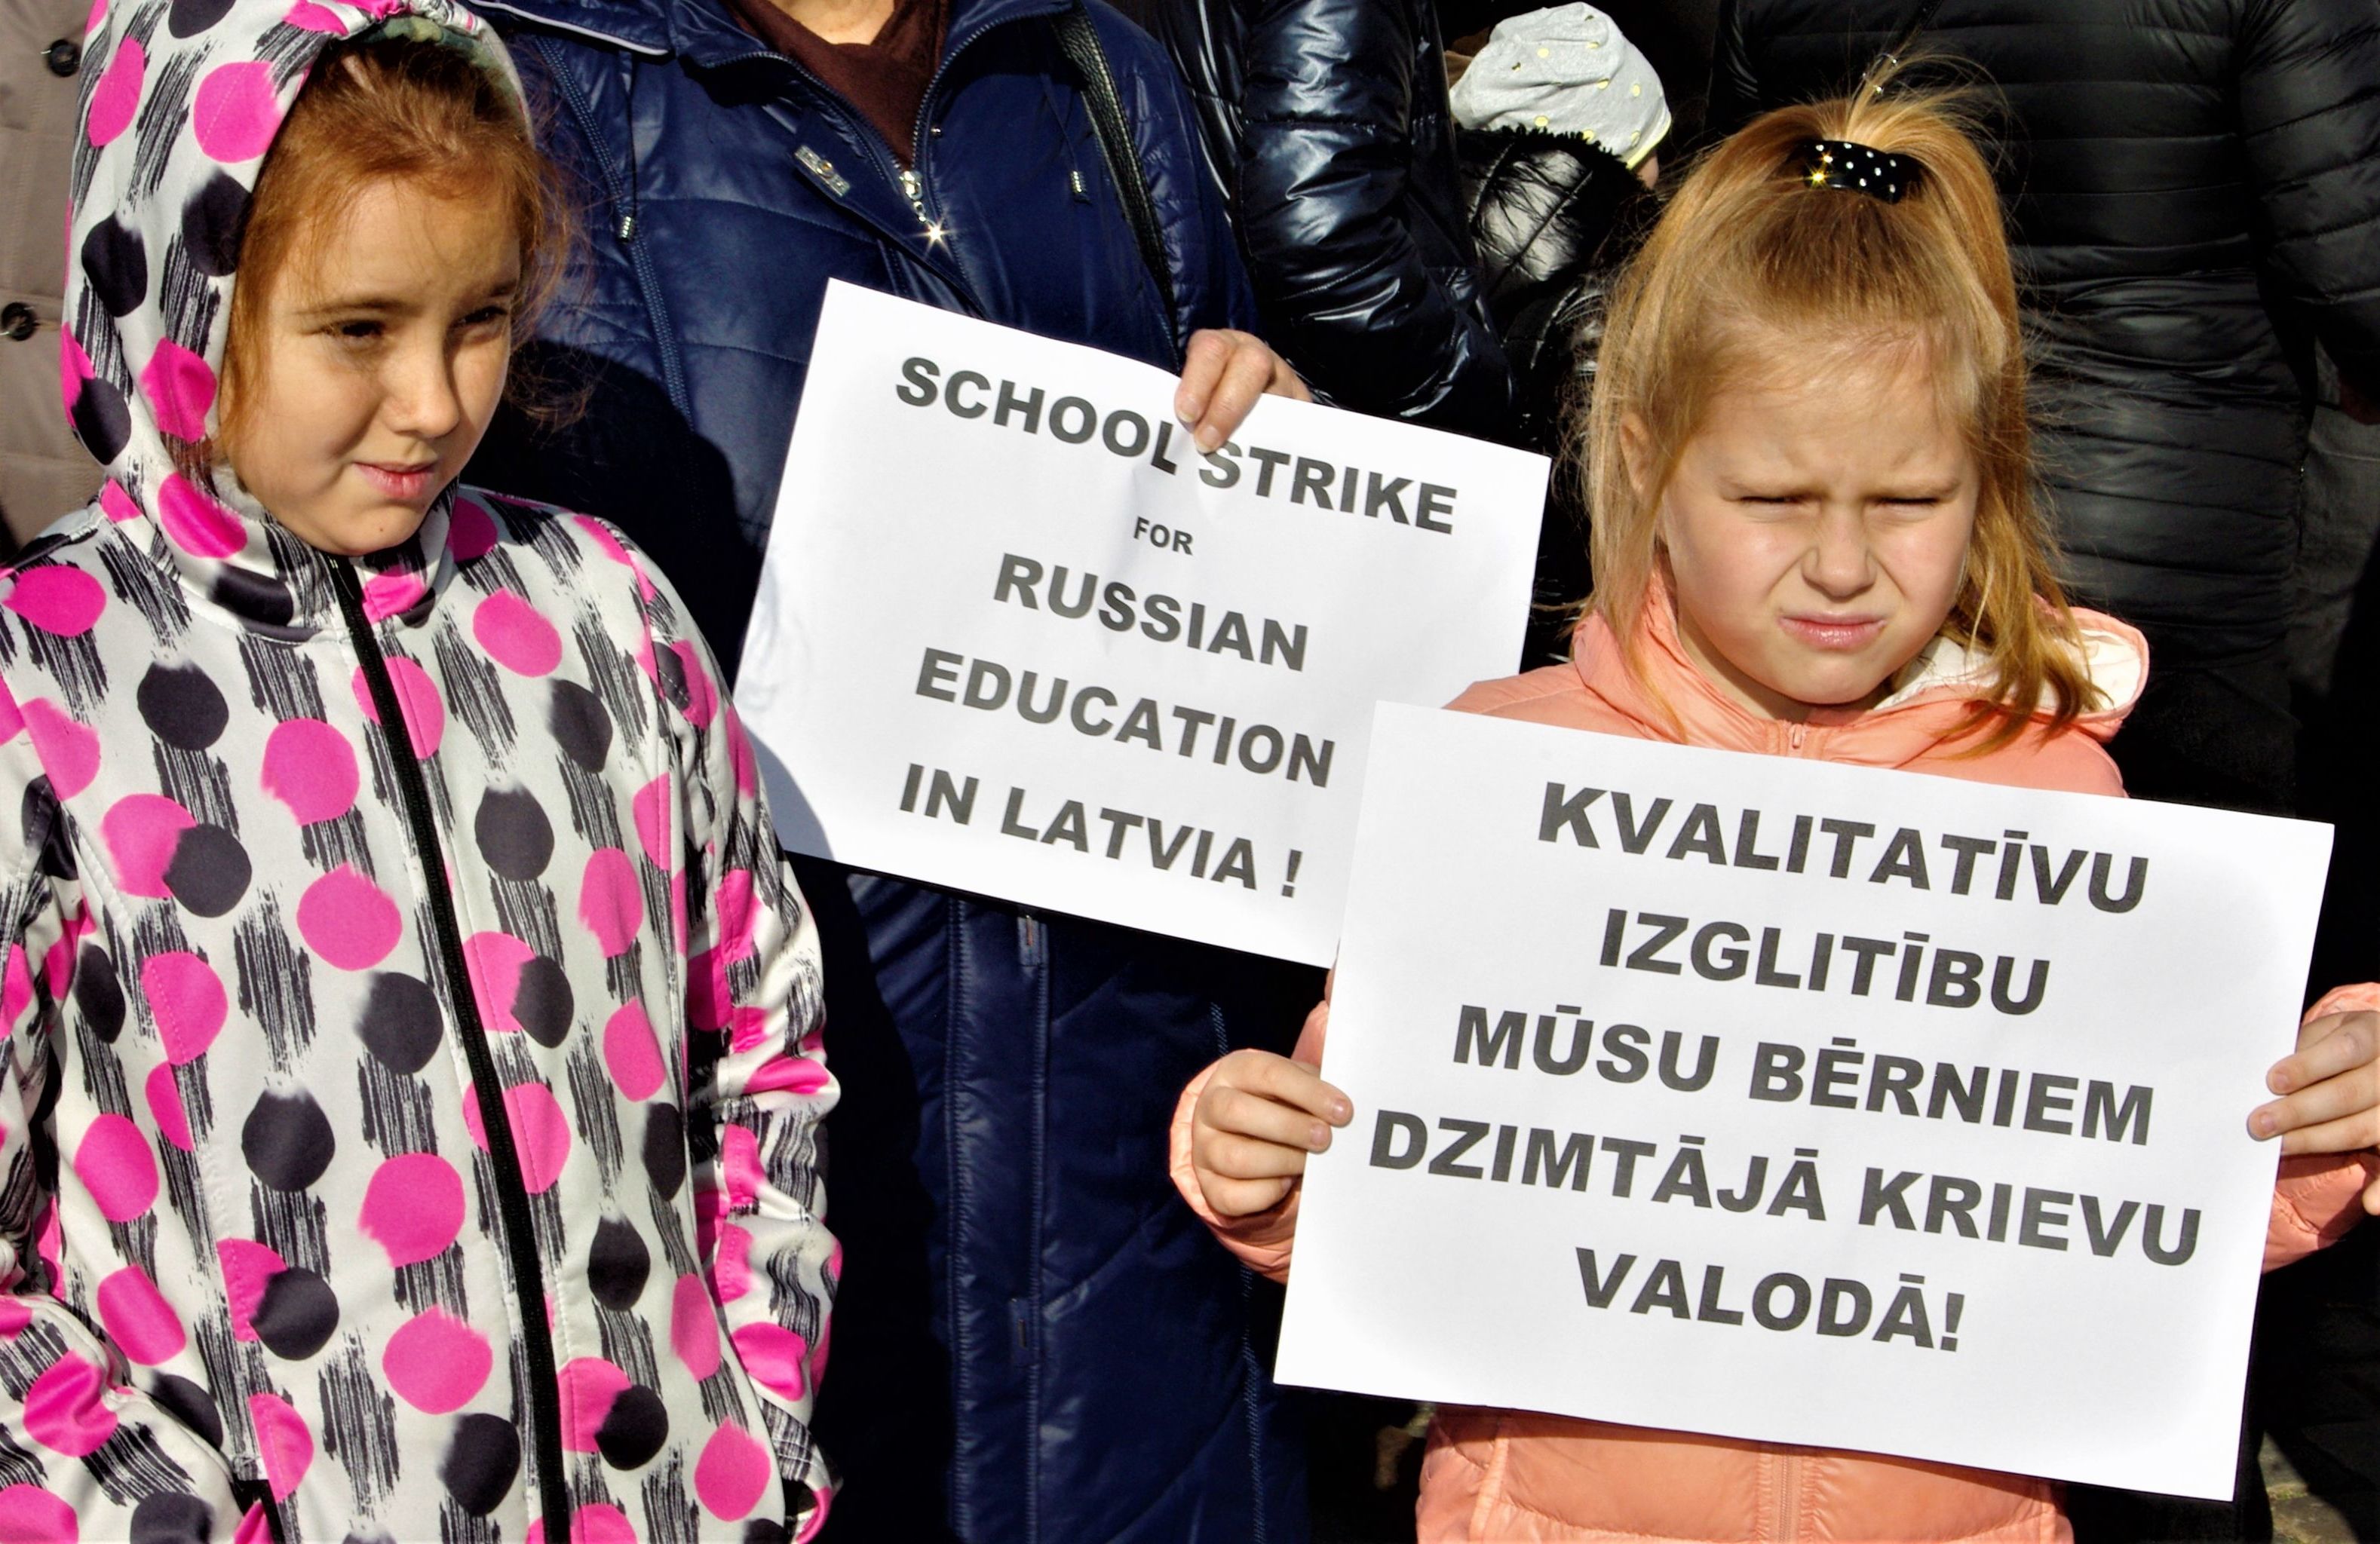 Дети на Шествии в защиту русских школ 5 октября 2019 года